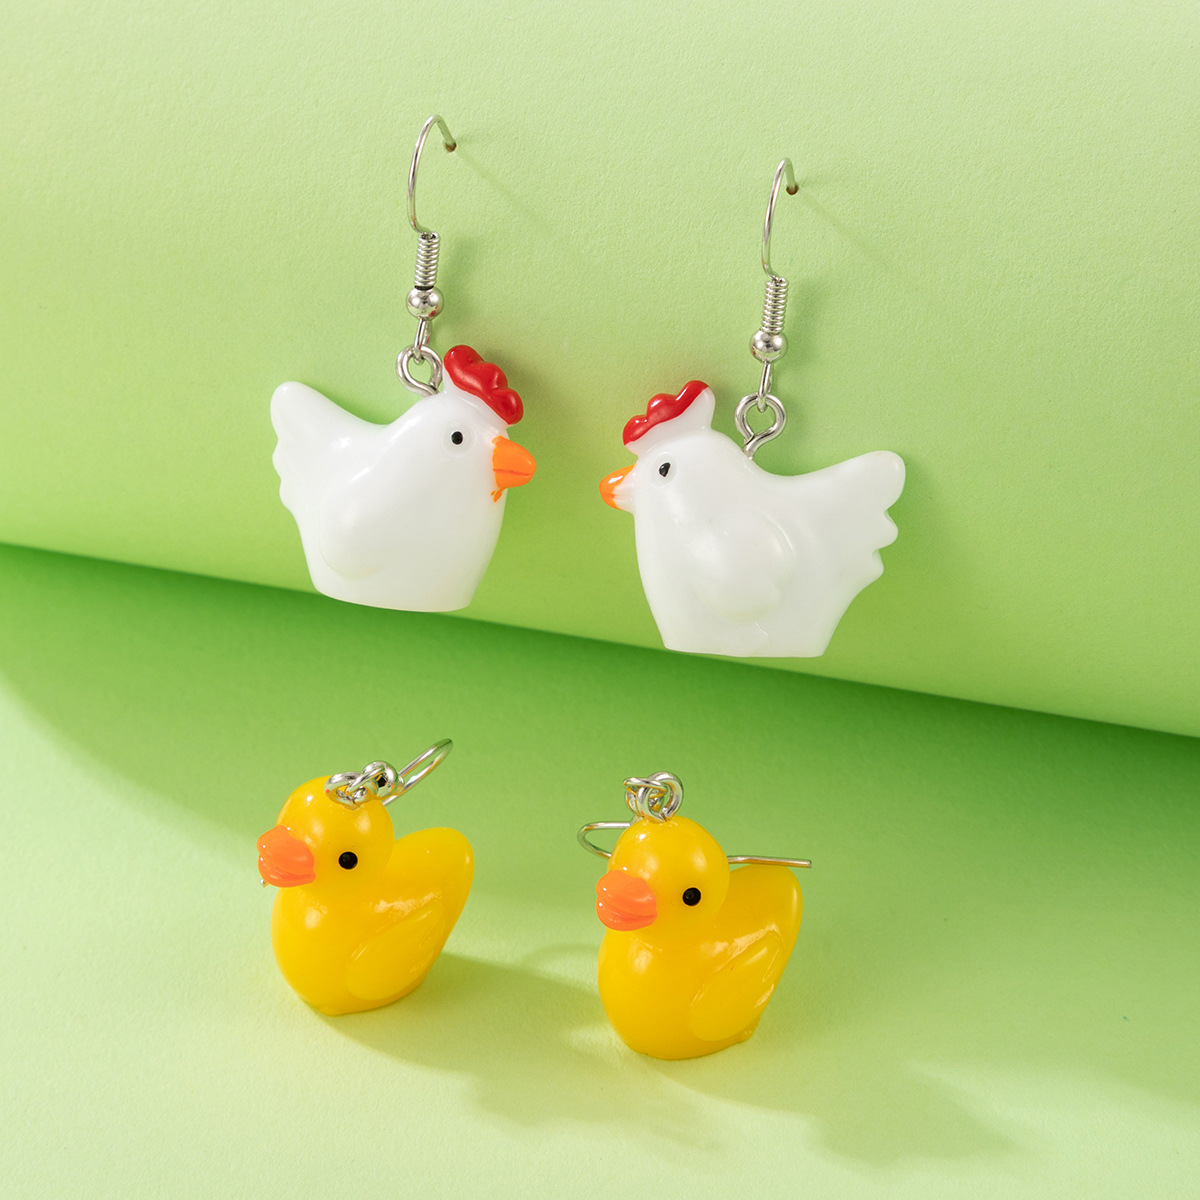 green rubber duckie earrings